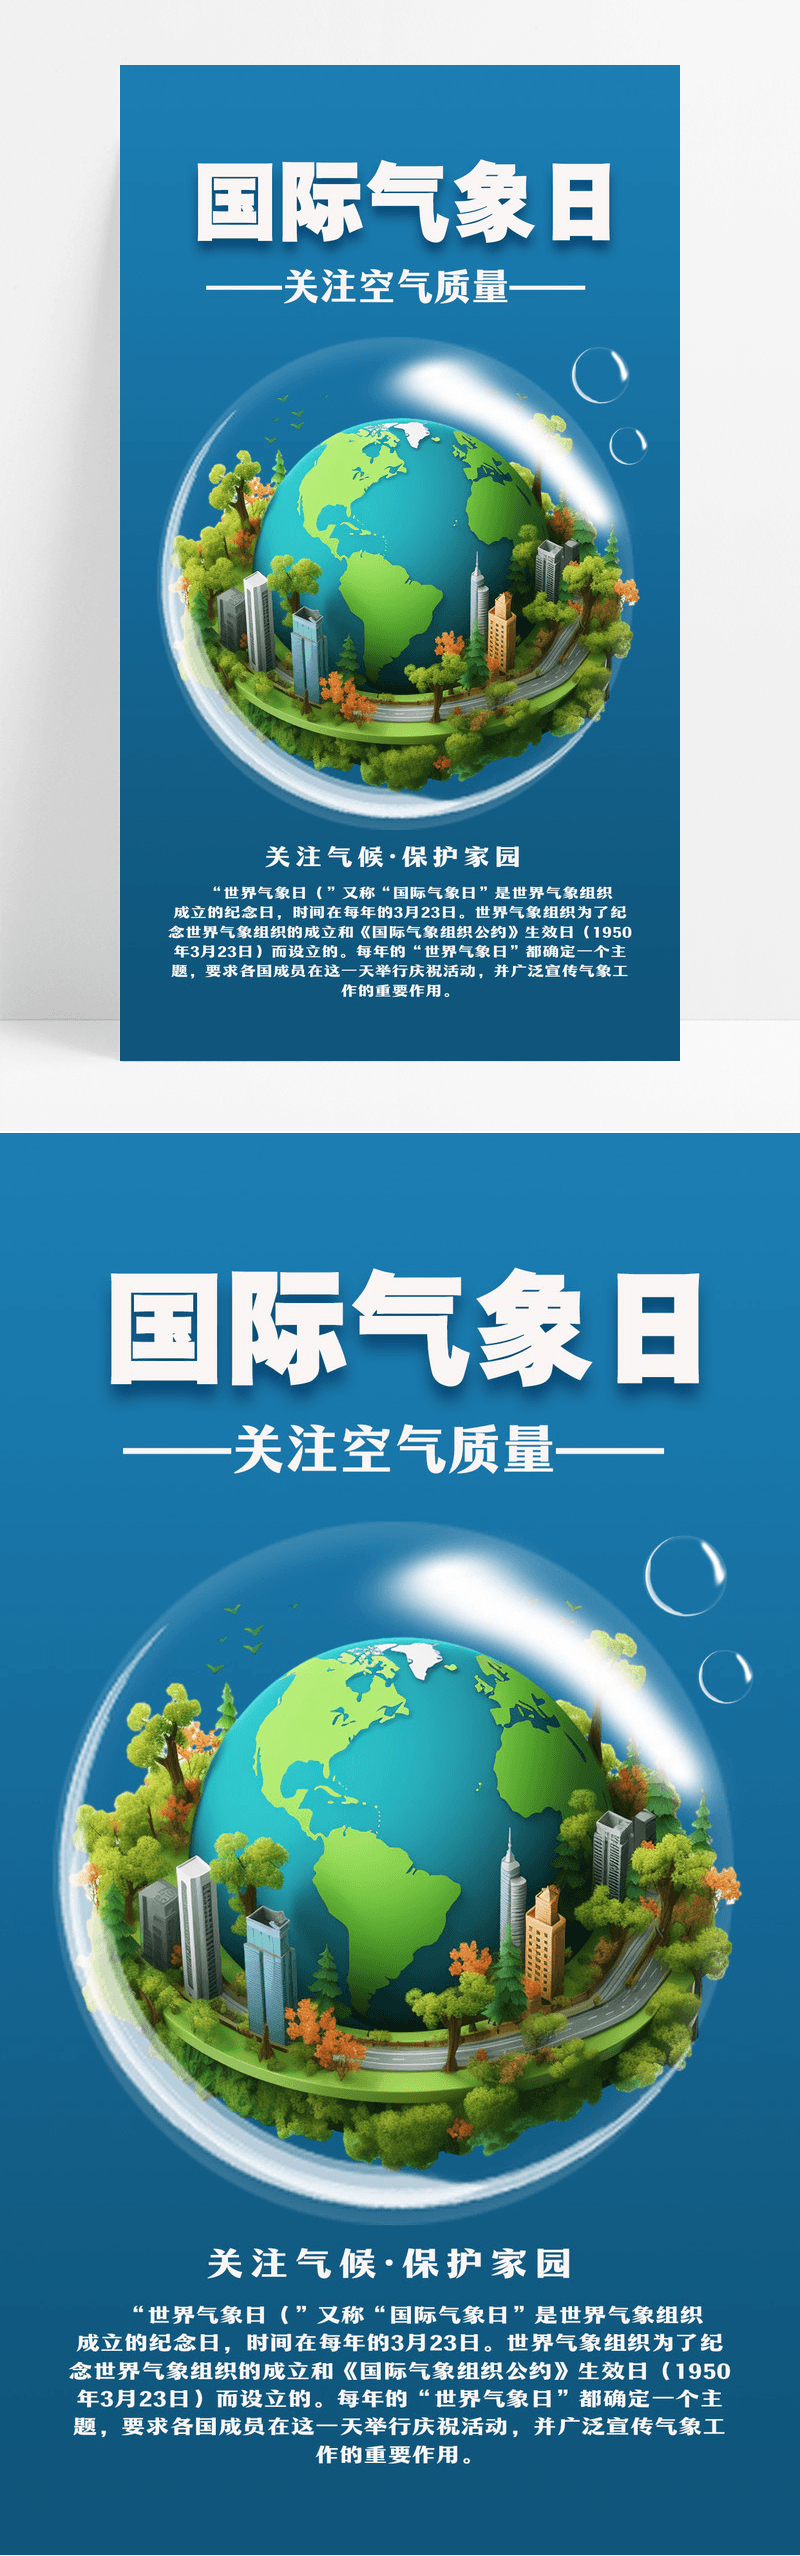 蓝色清新简约国际气象日手机宣传海报设计